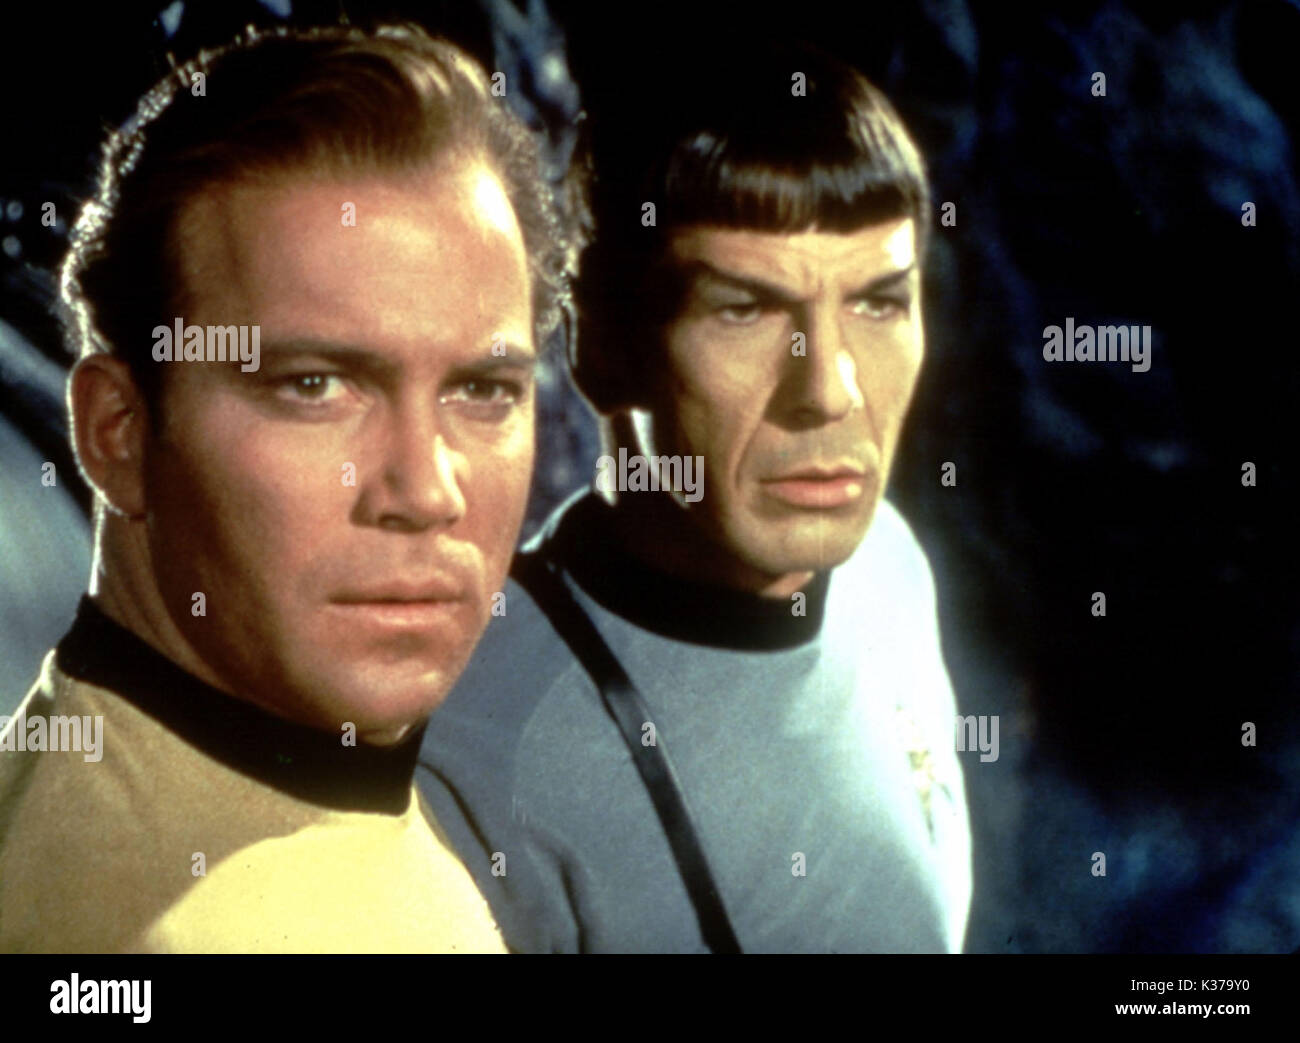 STAR TREK WILLIAM SHATNER as Captain James T Kirk, LEONARD NIMOY as Mr Spock STAR TREK Stock Photo